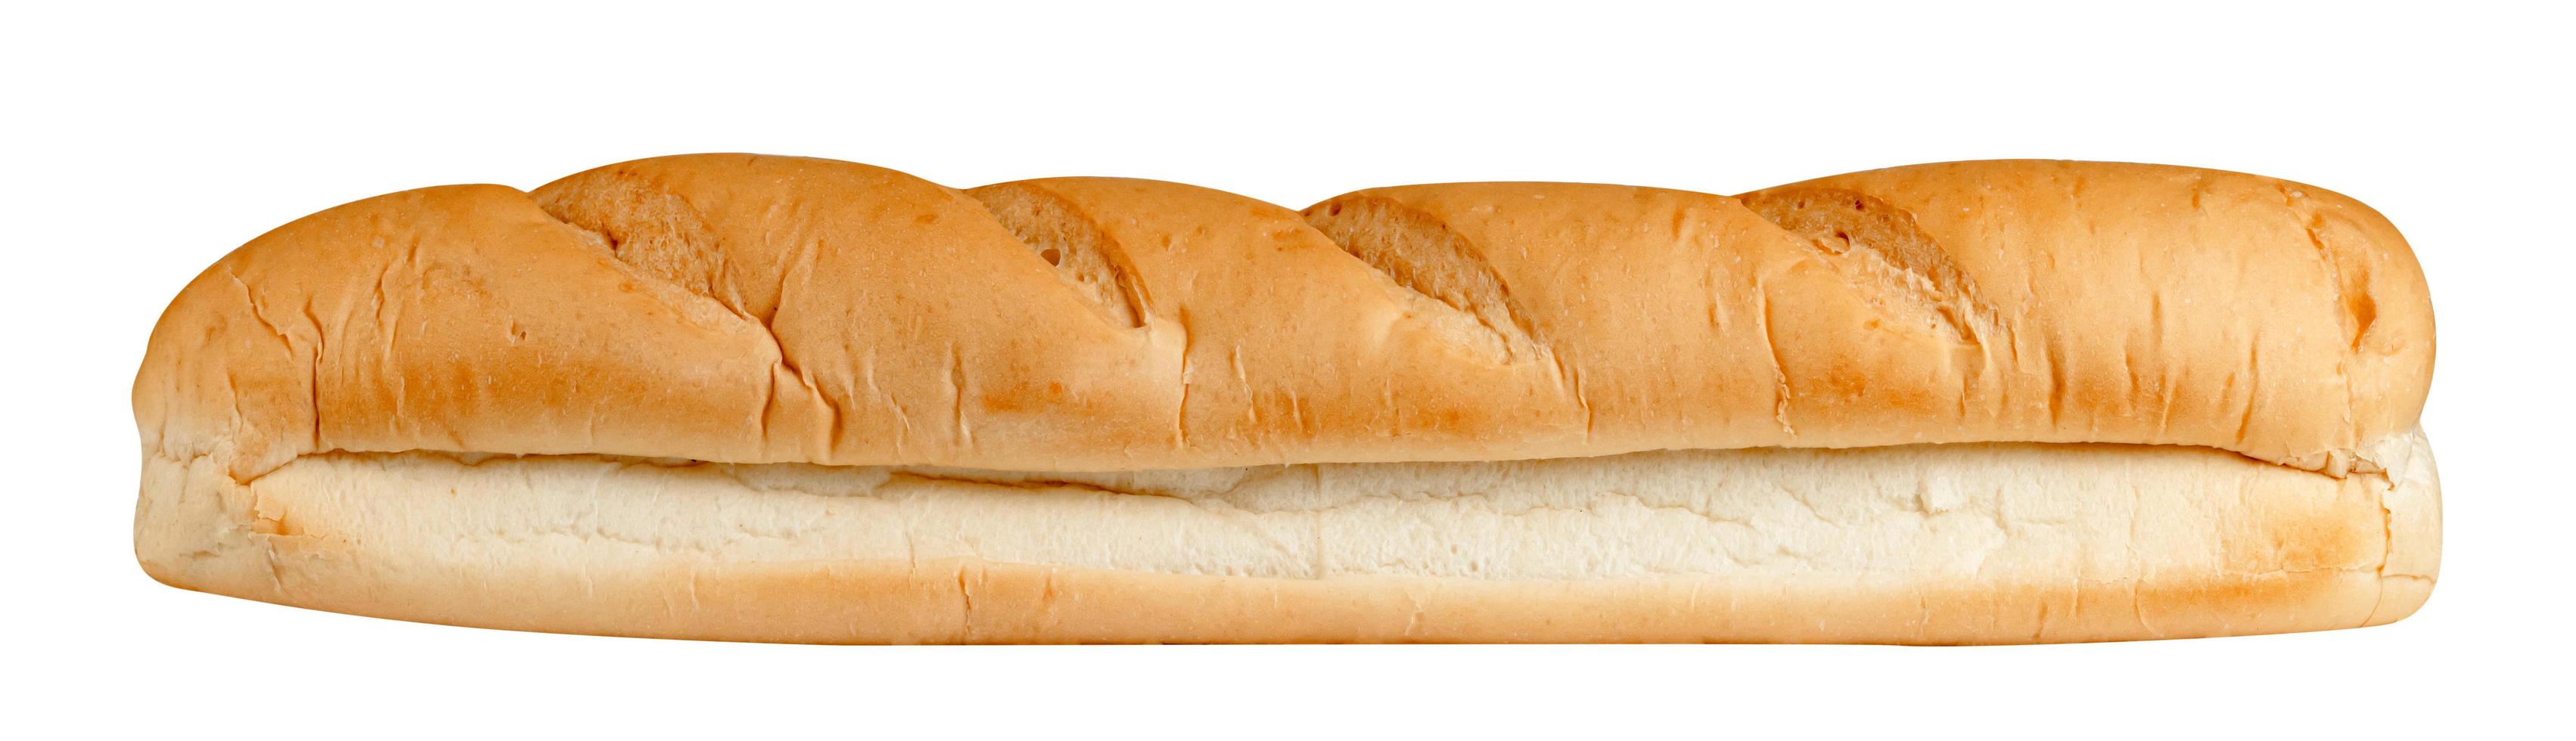 baguette francesi pane isolato su sfondo bianco, include il percorso di ritaglio foto